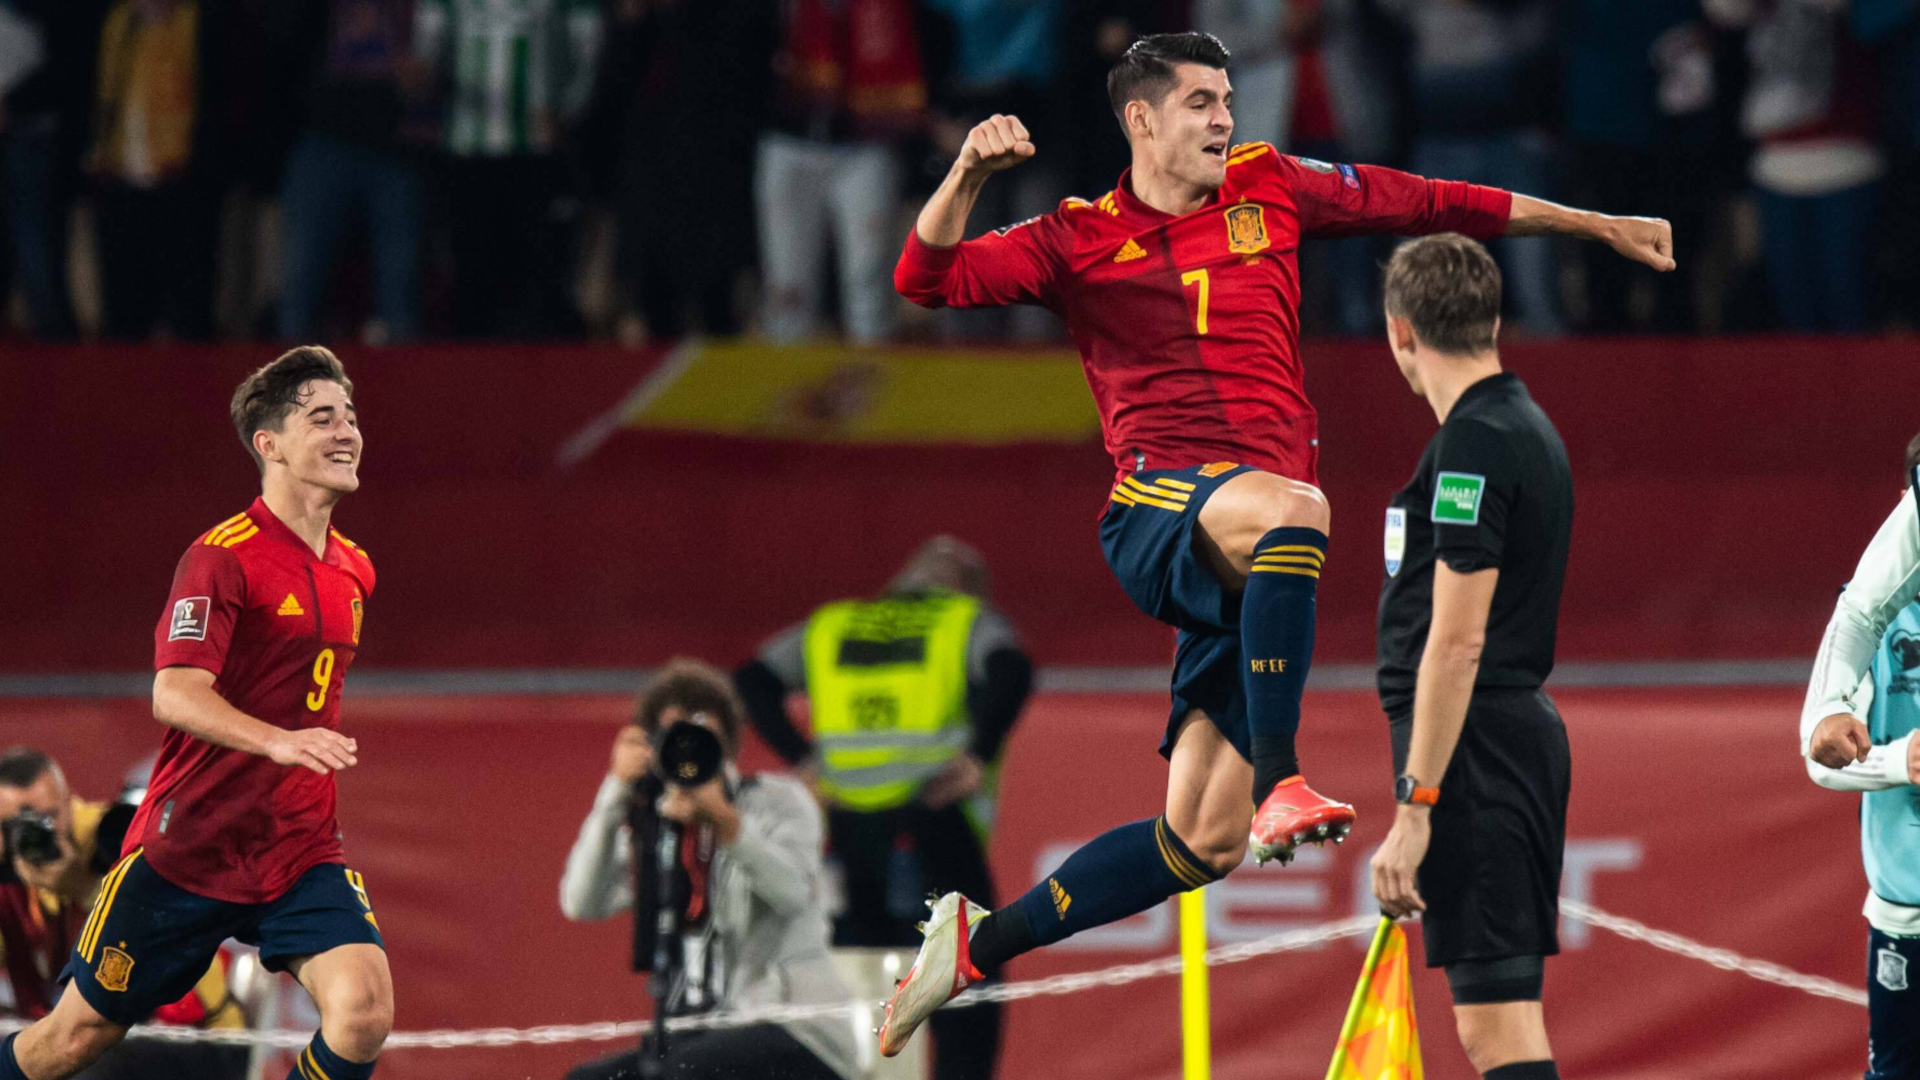 
                <strong>Spanien</strong><br>
                Dank eines 1:0-Erfolgs über Verfolger Schweden sicherte sich Spanien am letzten Spieltag sein 16. WM-Ticket. Alvaro Morata schoss den Siegtreffer in der 86. Minute. Bei einer Niederlage wären die Skandinavier direkt qualifiziert gewesen. Für die Iberer ist es die zwölfte Teilnahme an einer WM in Folge.
              